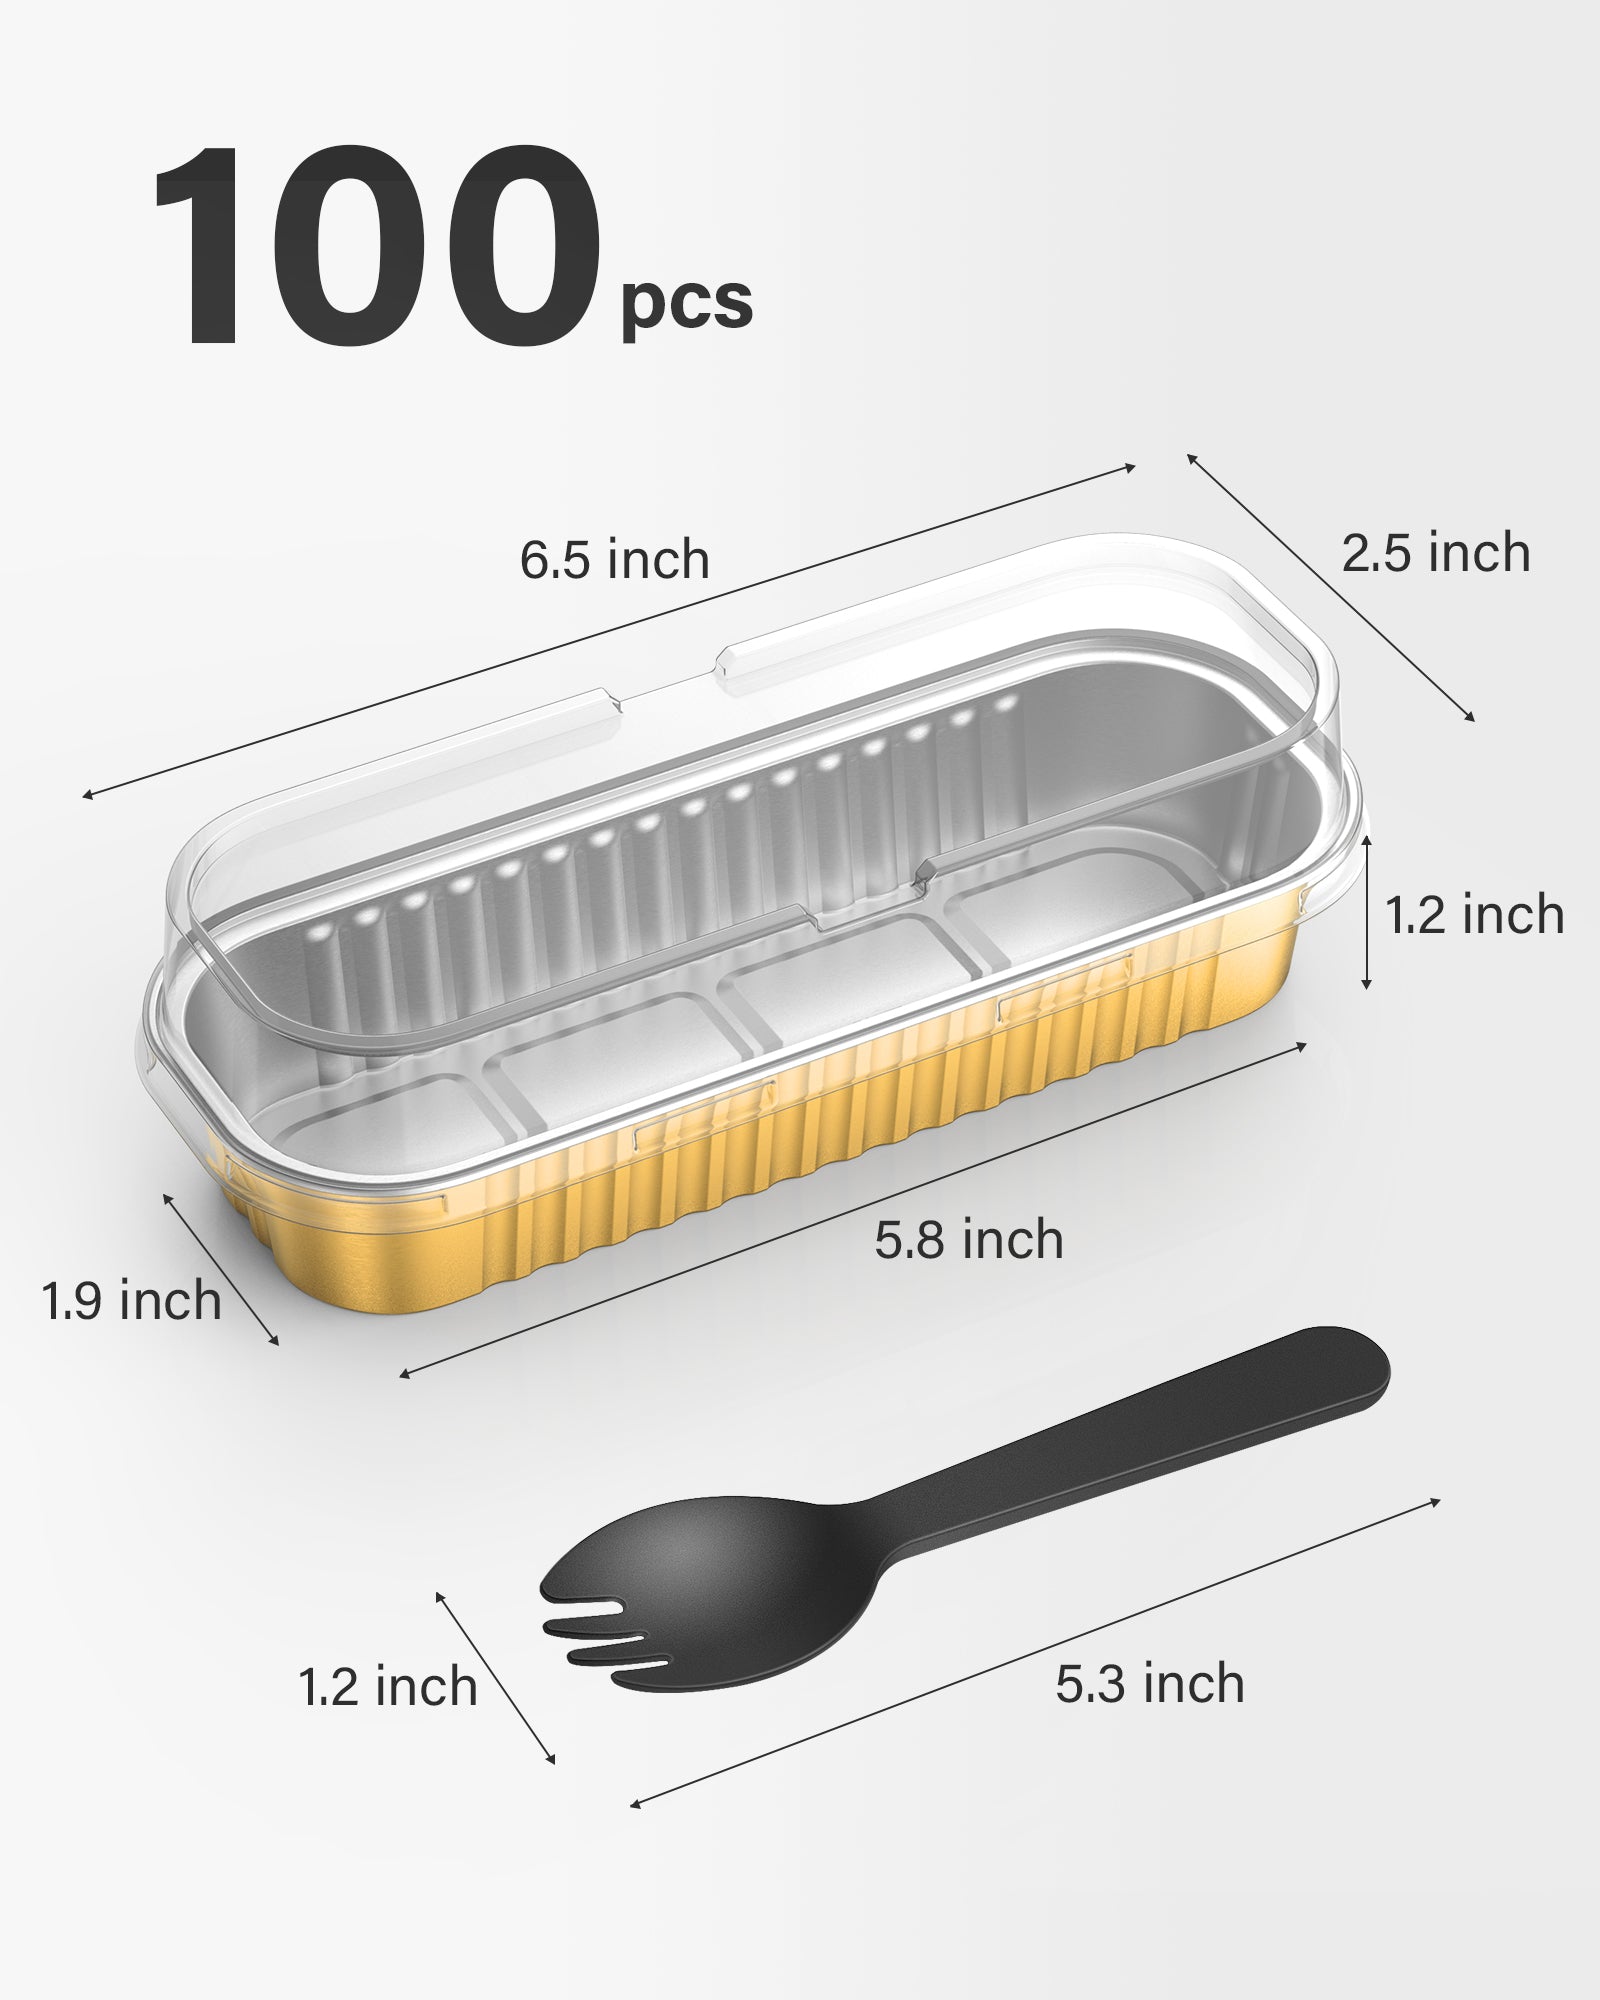 100PC Mini Loaf Pans With Lids Aluminum Foil Baking Pans Tins